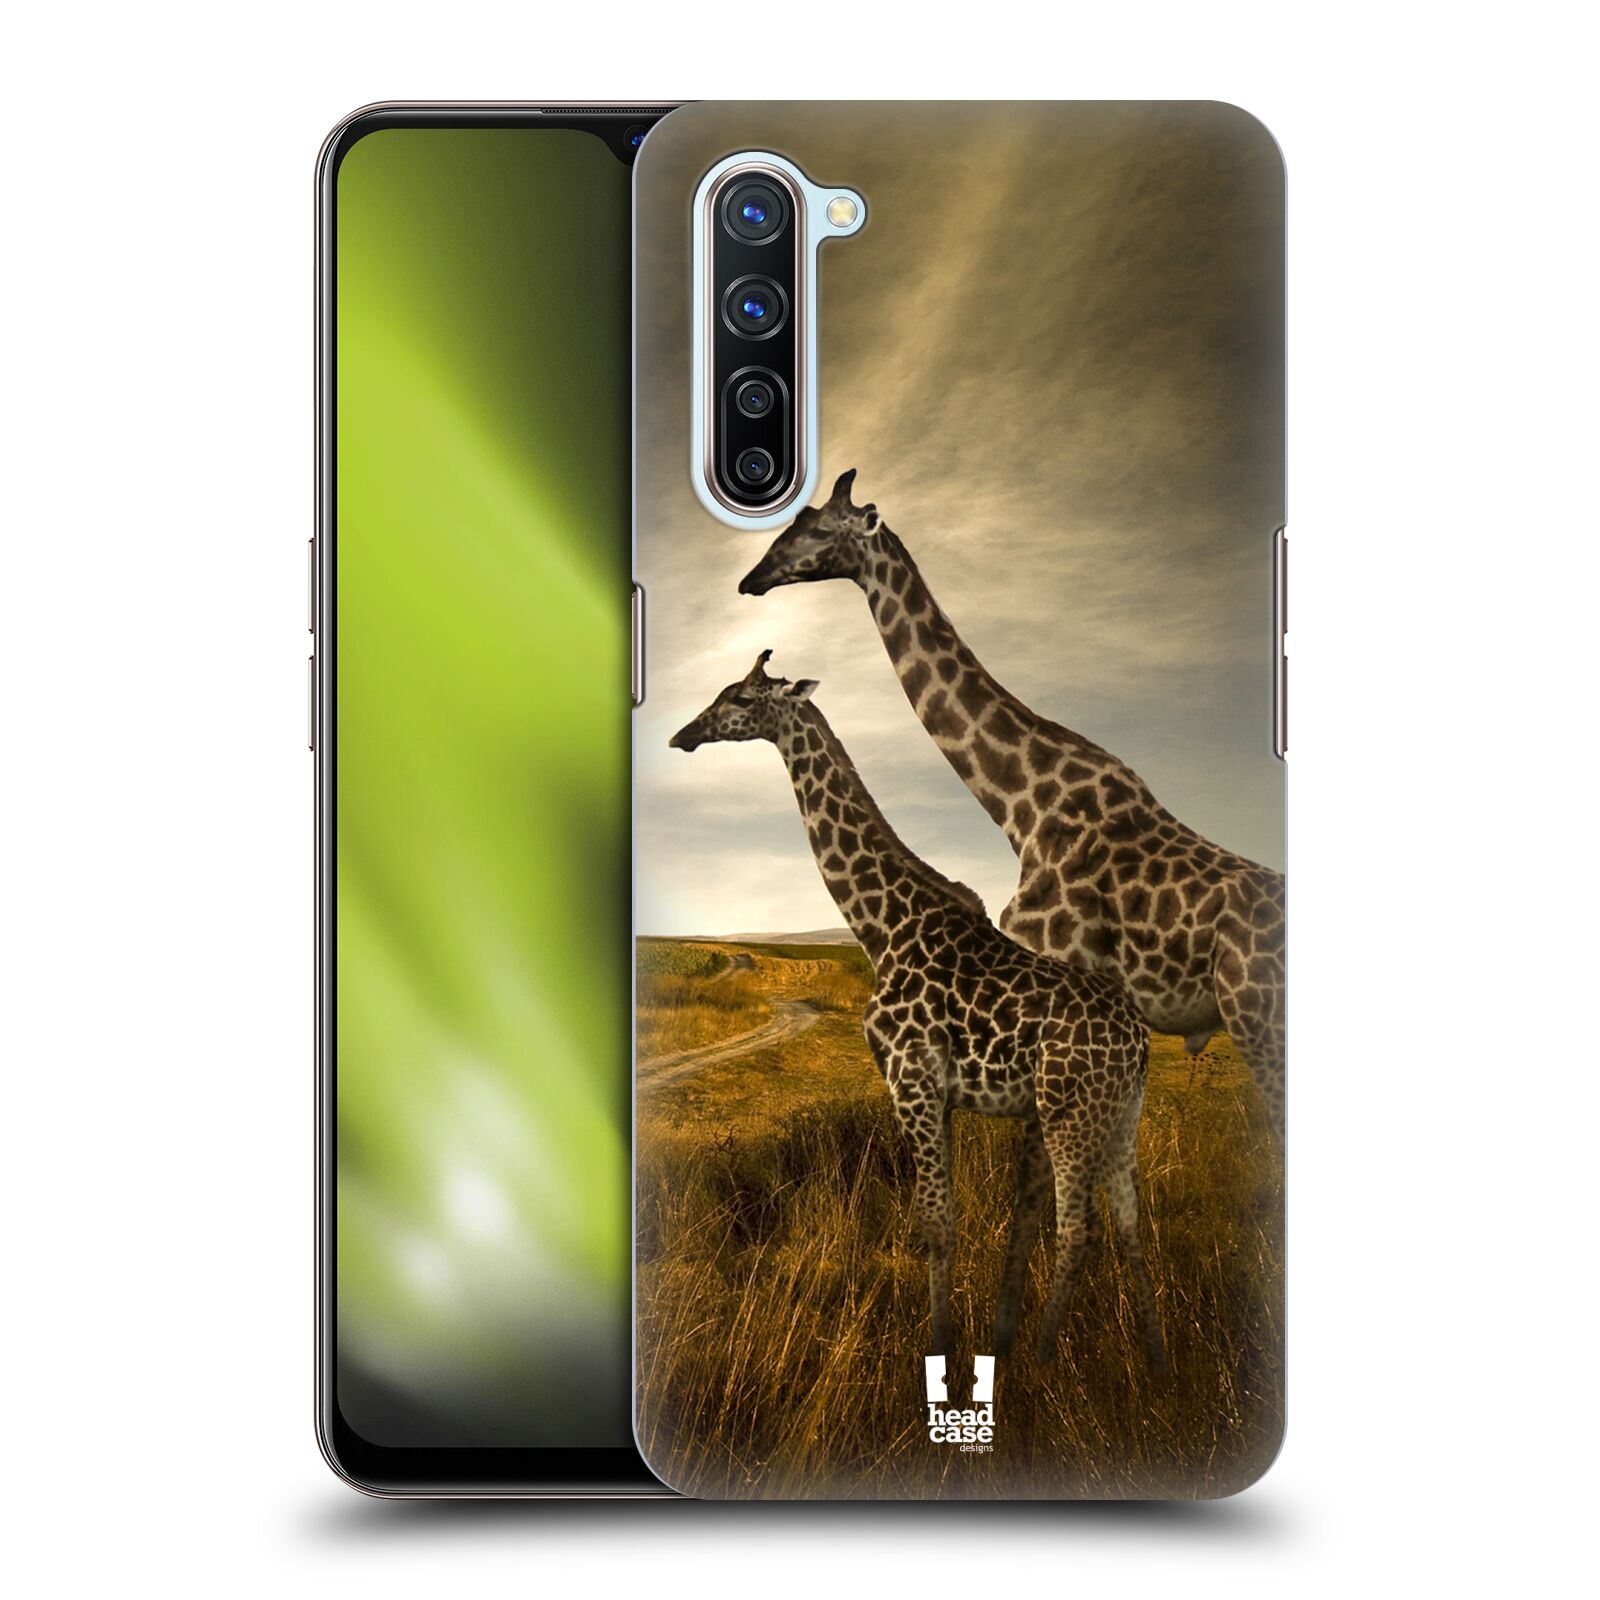 Zadní obal pro mobil Oppo Find X2 LITE - HEAD CASE - Svět zvířat žirafy